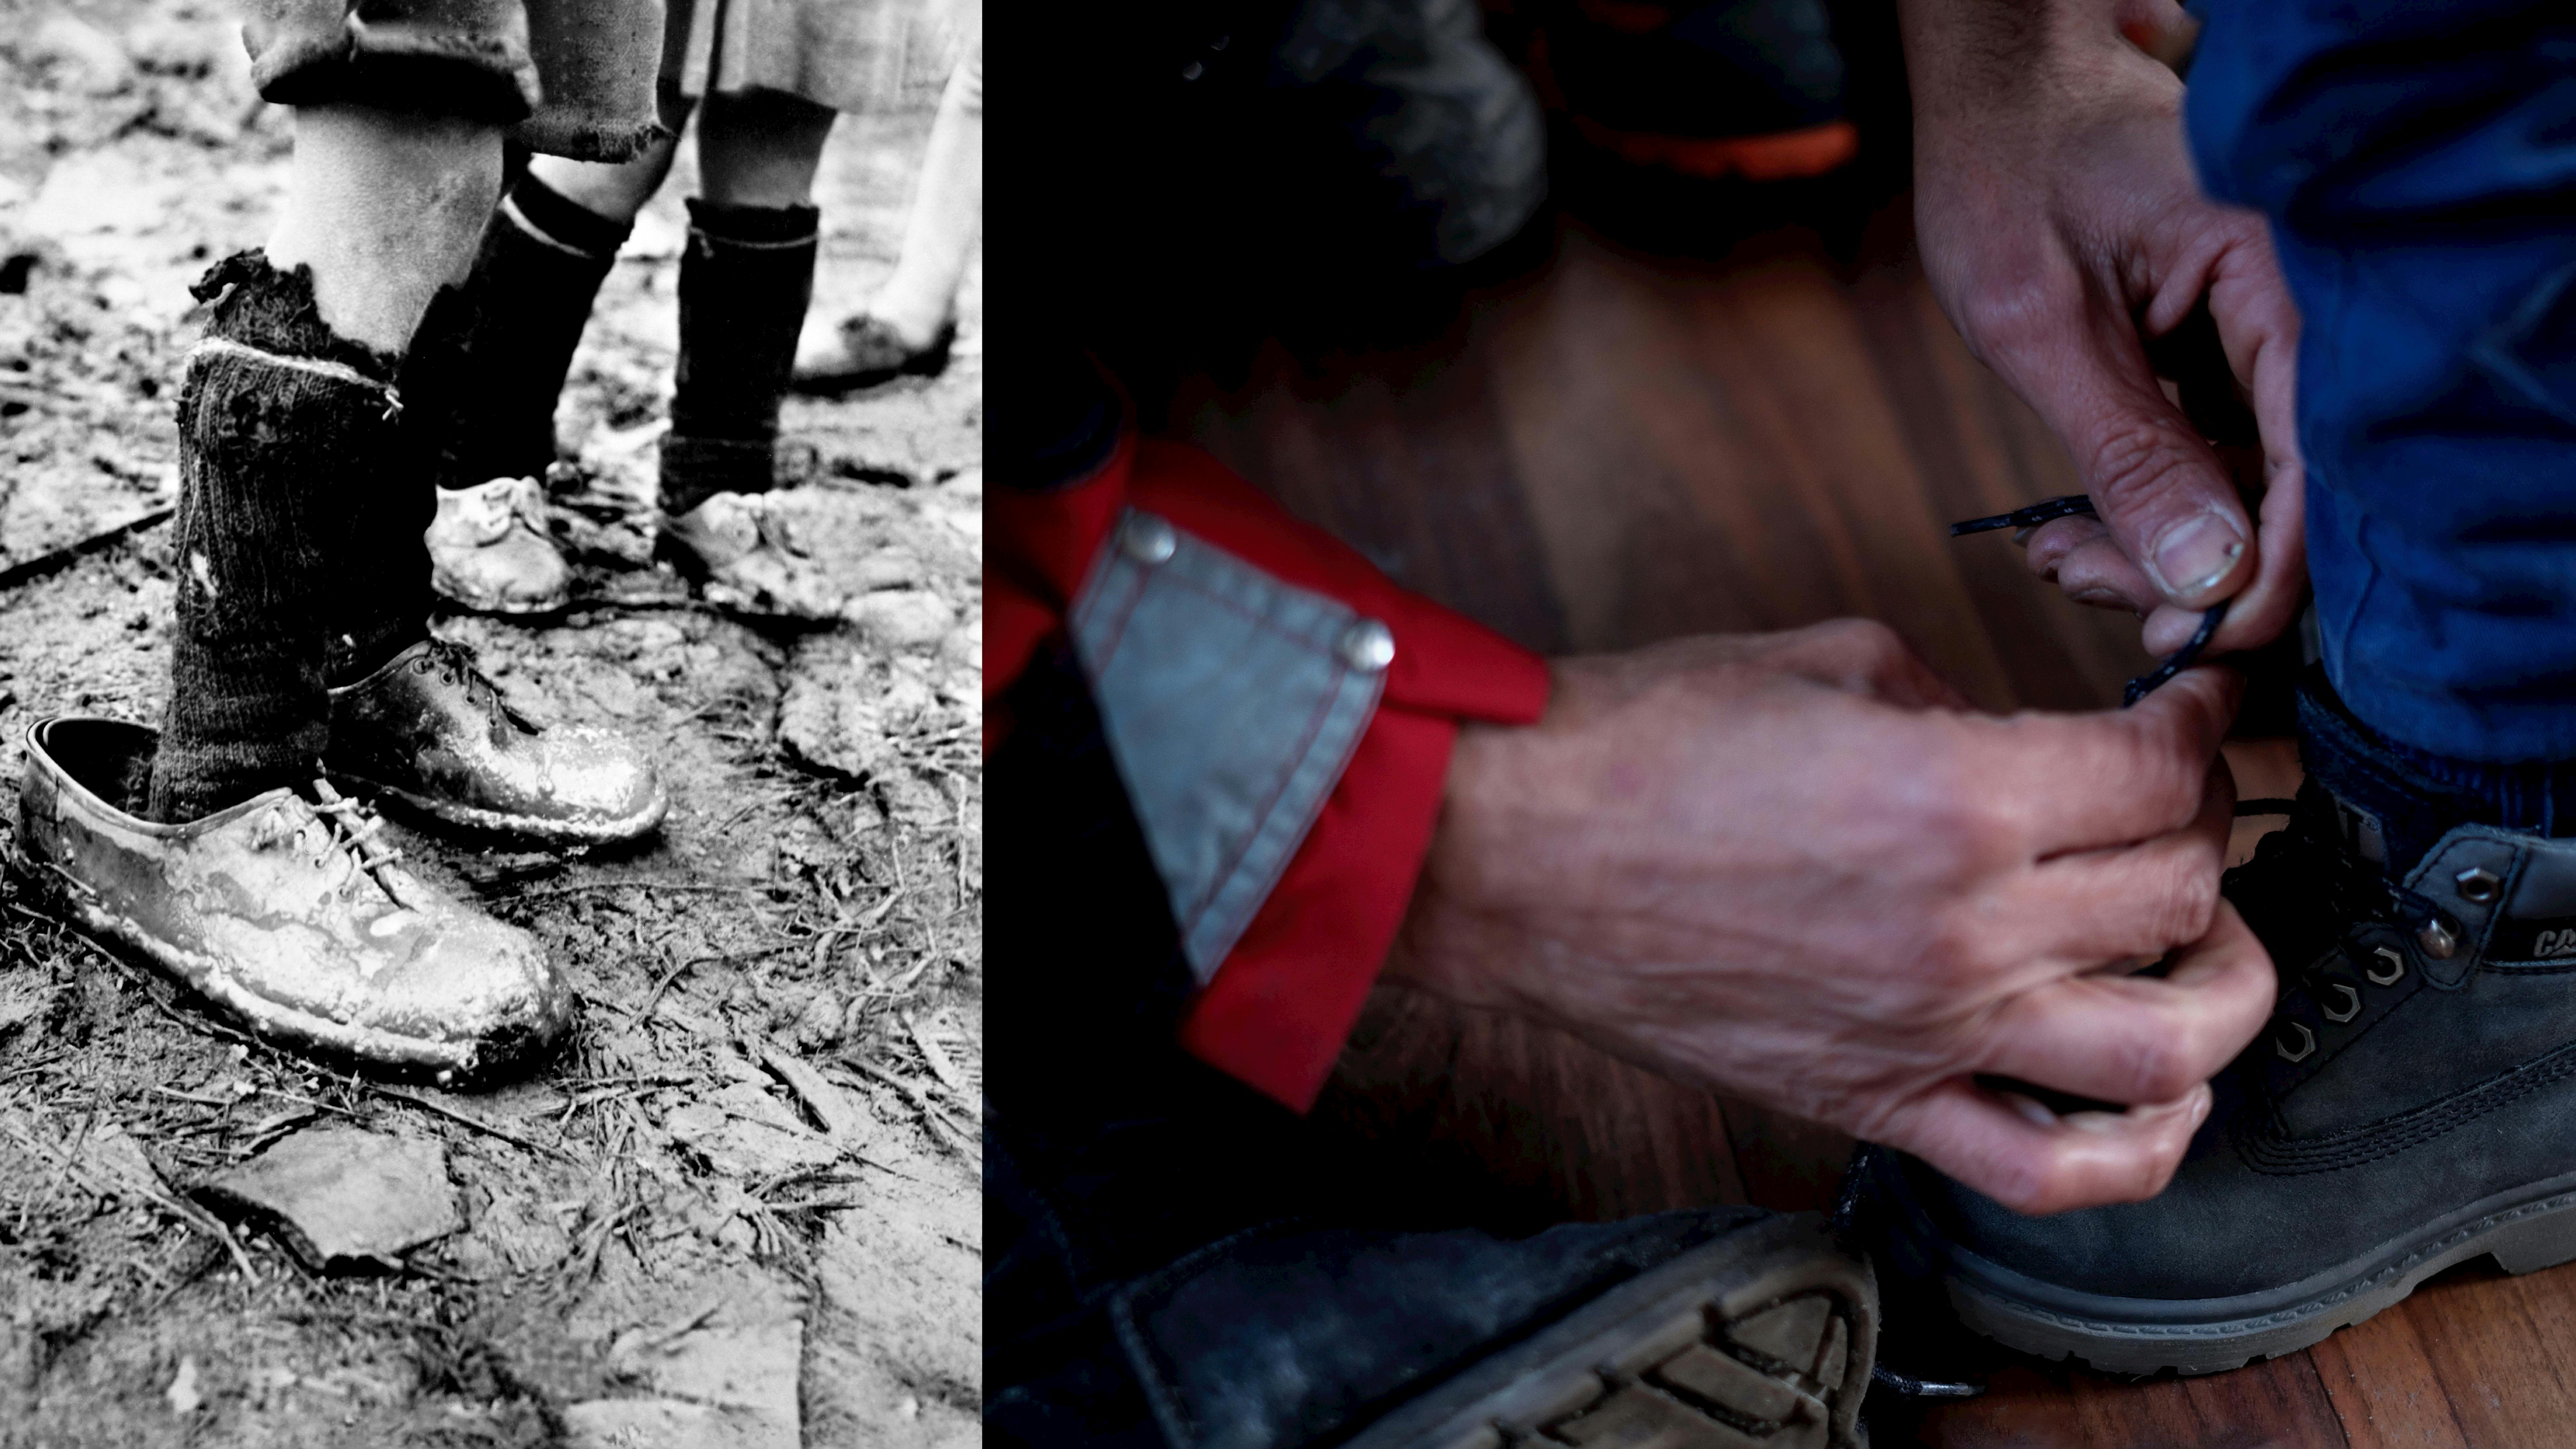 In Grecia intorno al 1950, un ragazzo indossa scarpe da uomo  di una taglia troppo grande Nel 2015 a Gevgelija, Jamal Majati allaccia i lacci delle scarpe di suo figlio Basher